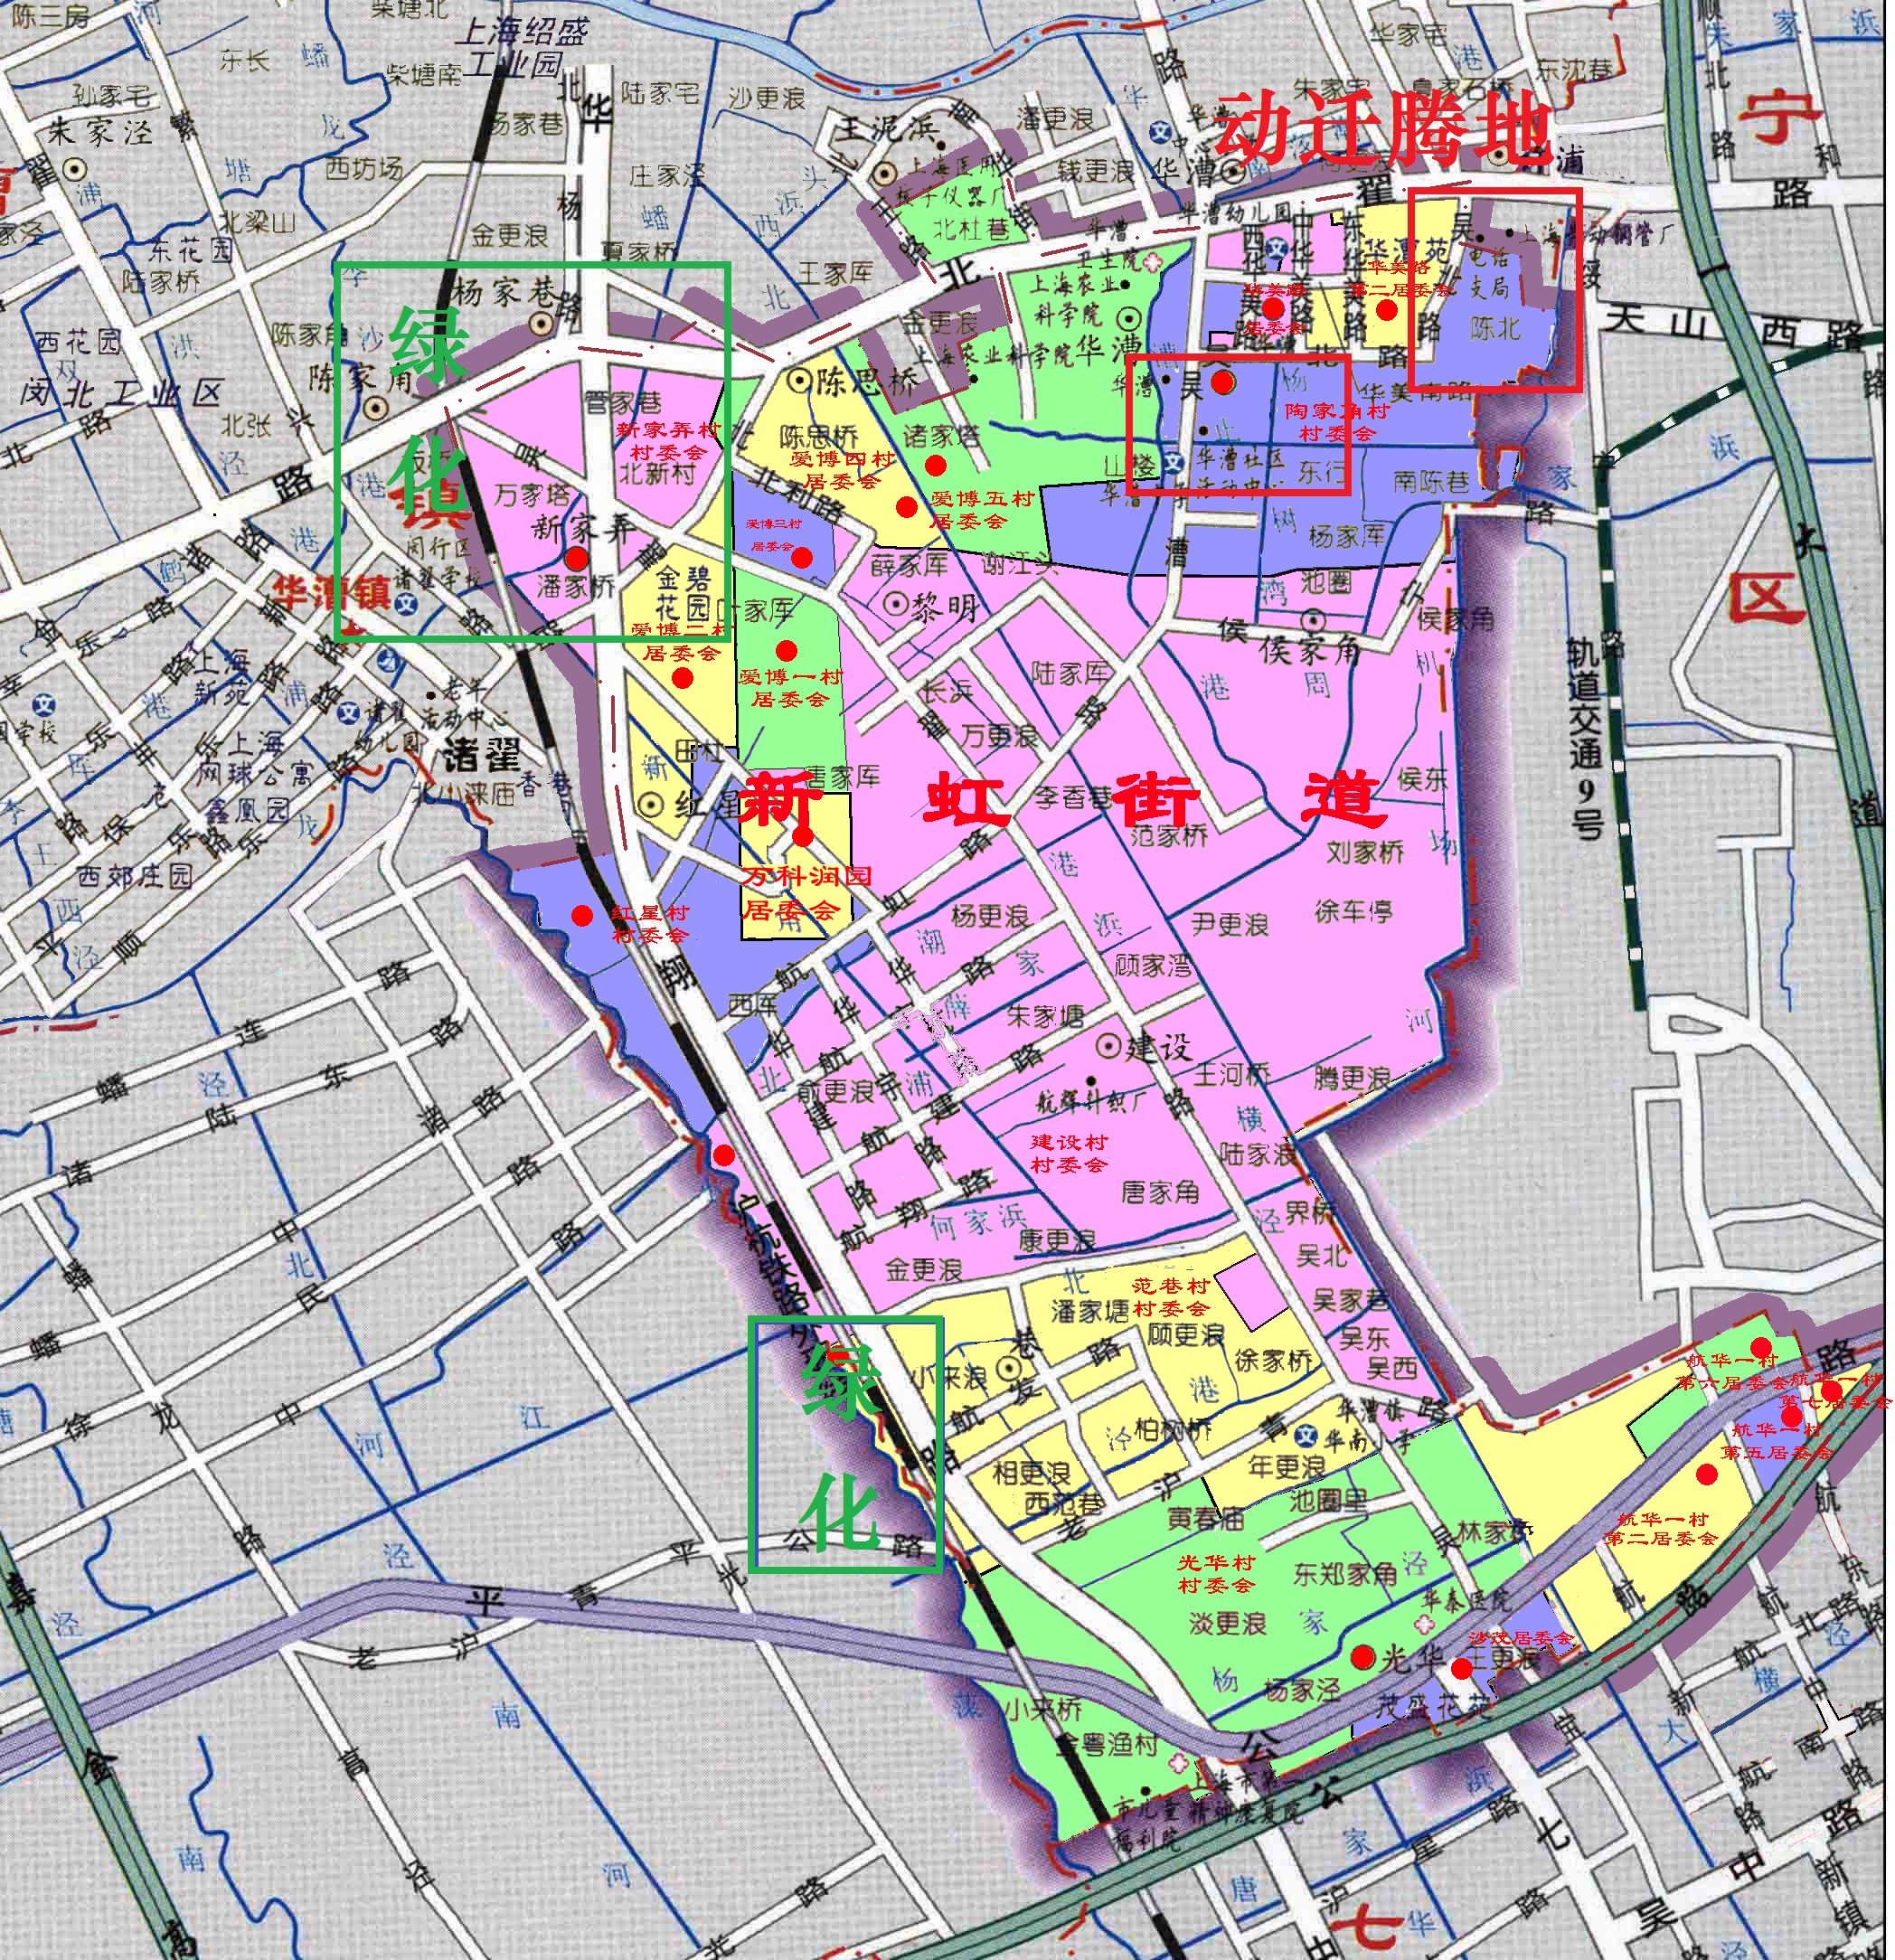 分析闵行区新虹街道第二季度计划:仅有的城中村要动迁